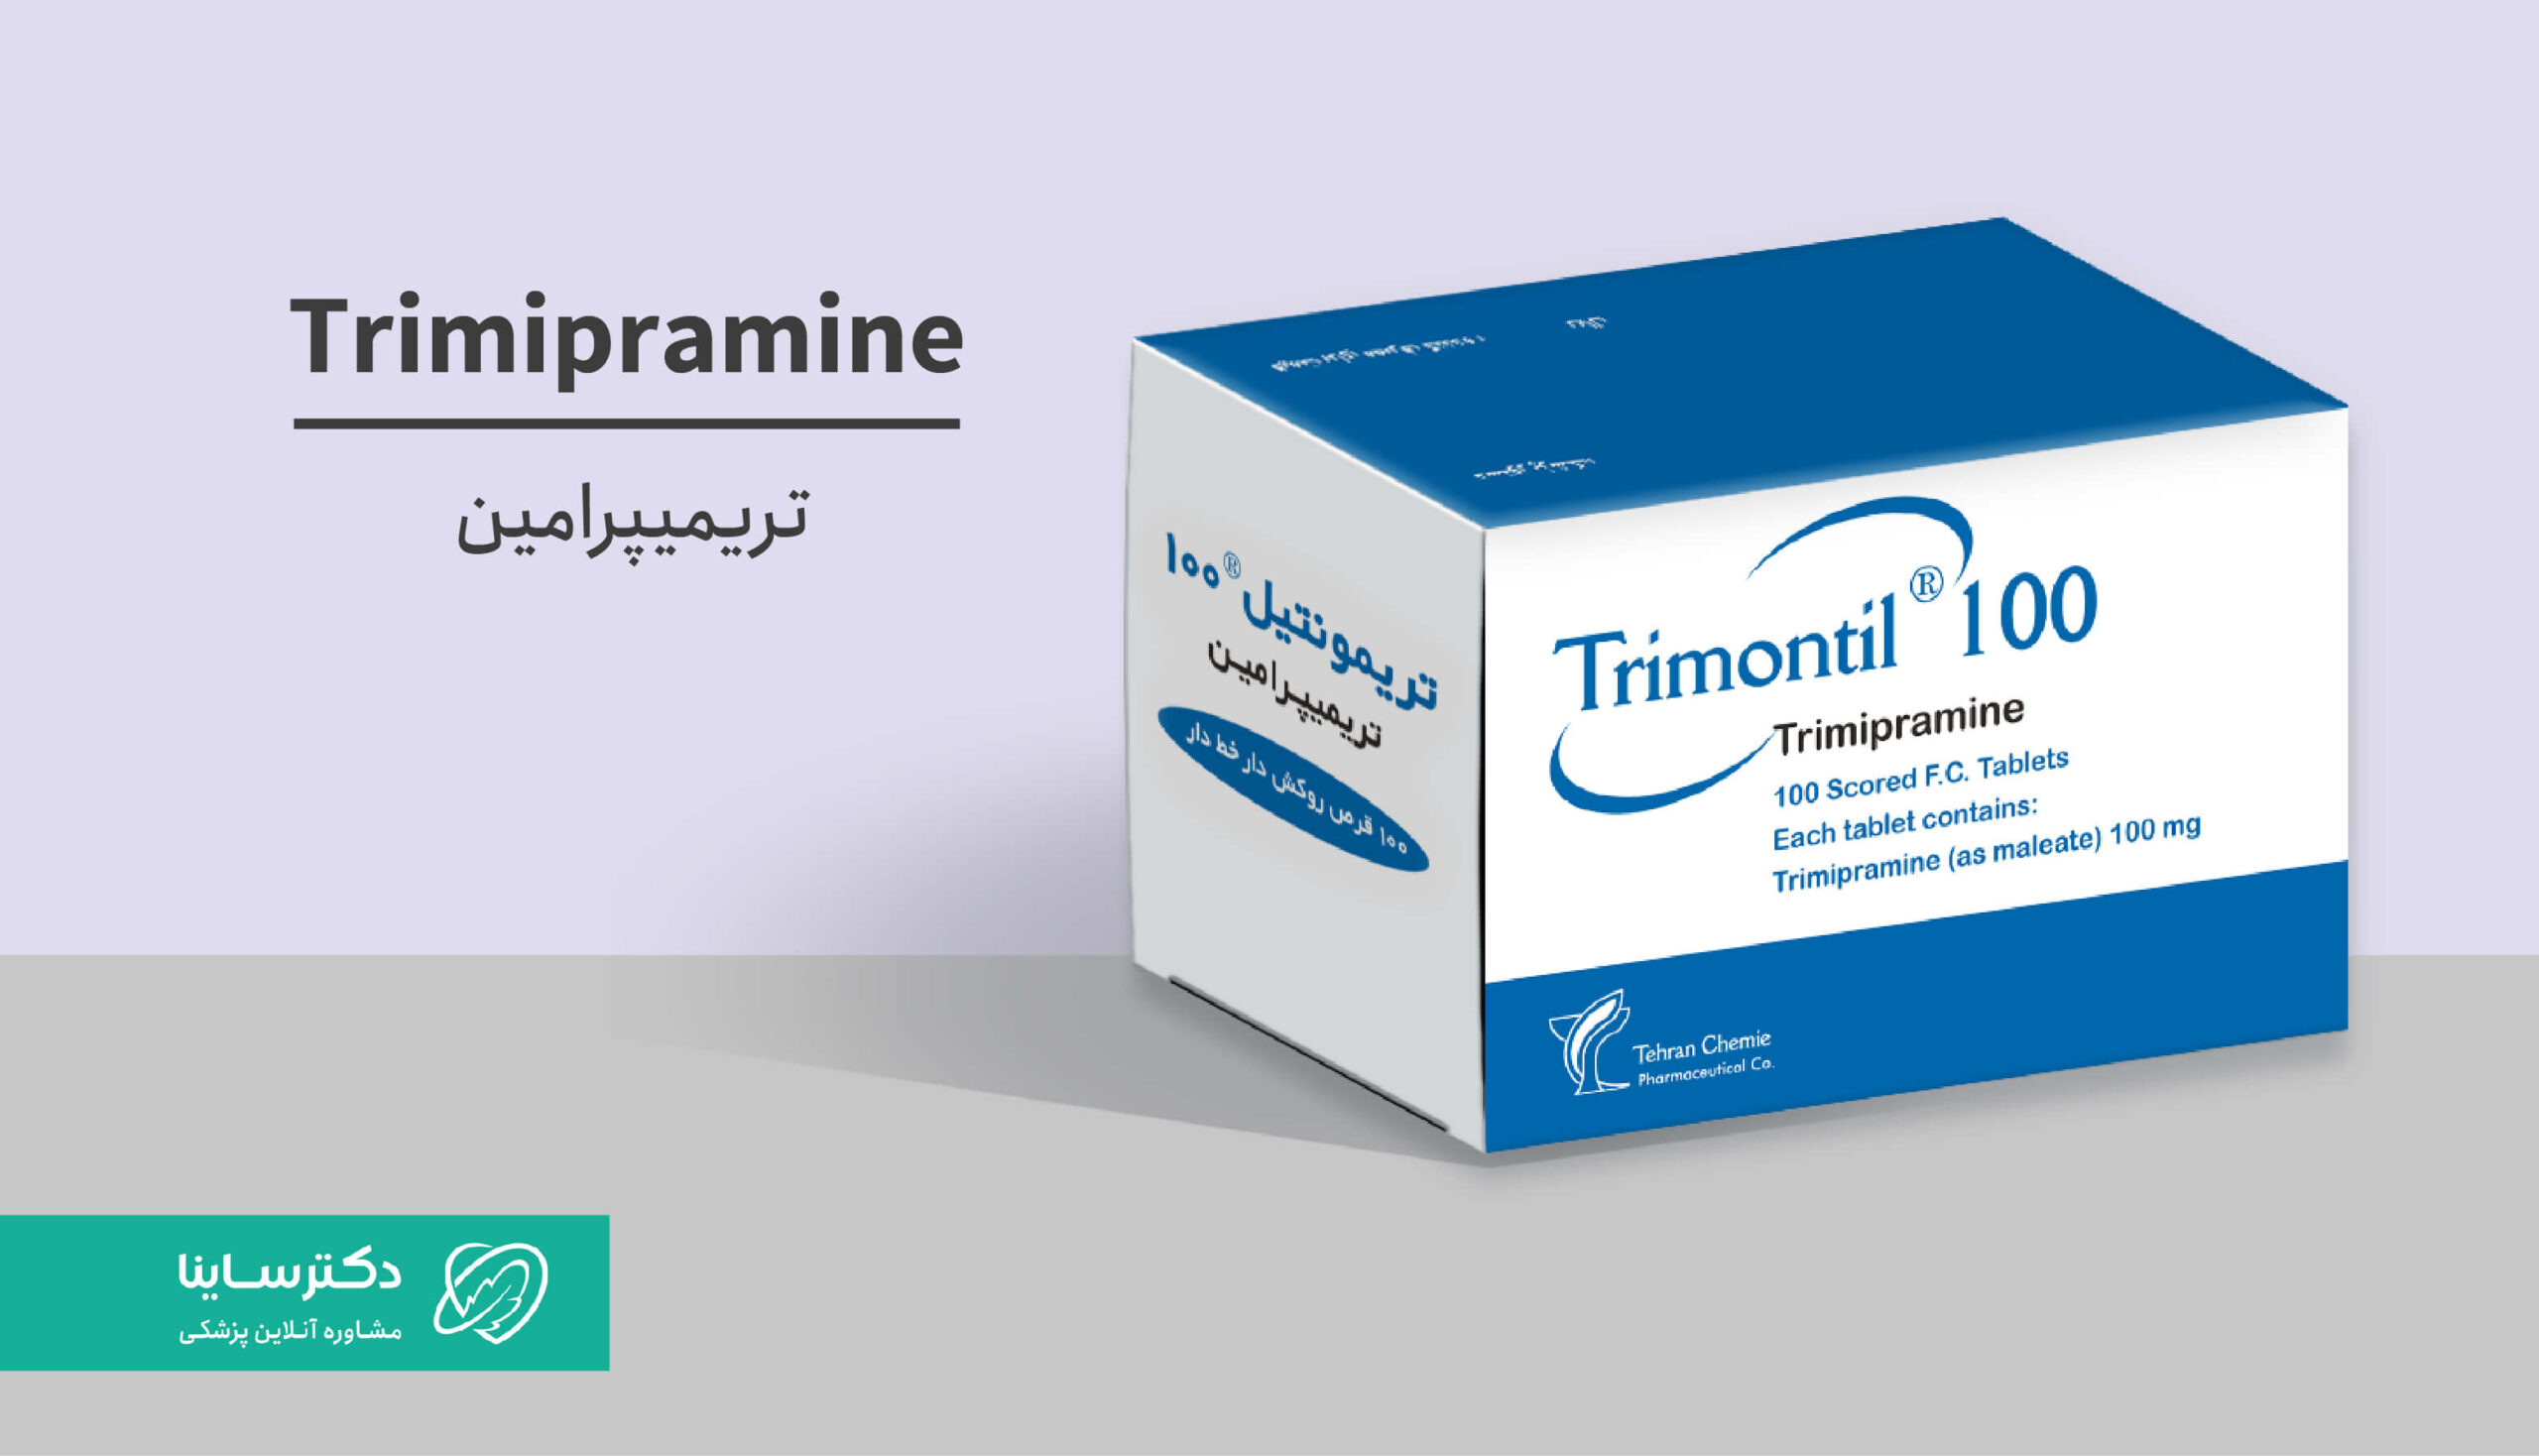 قرص و قطره تریمیپرامین (تریمونتیل): کاربرد، نحوه مصرف و عوارض